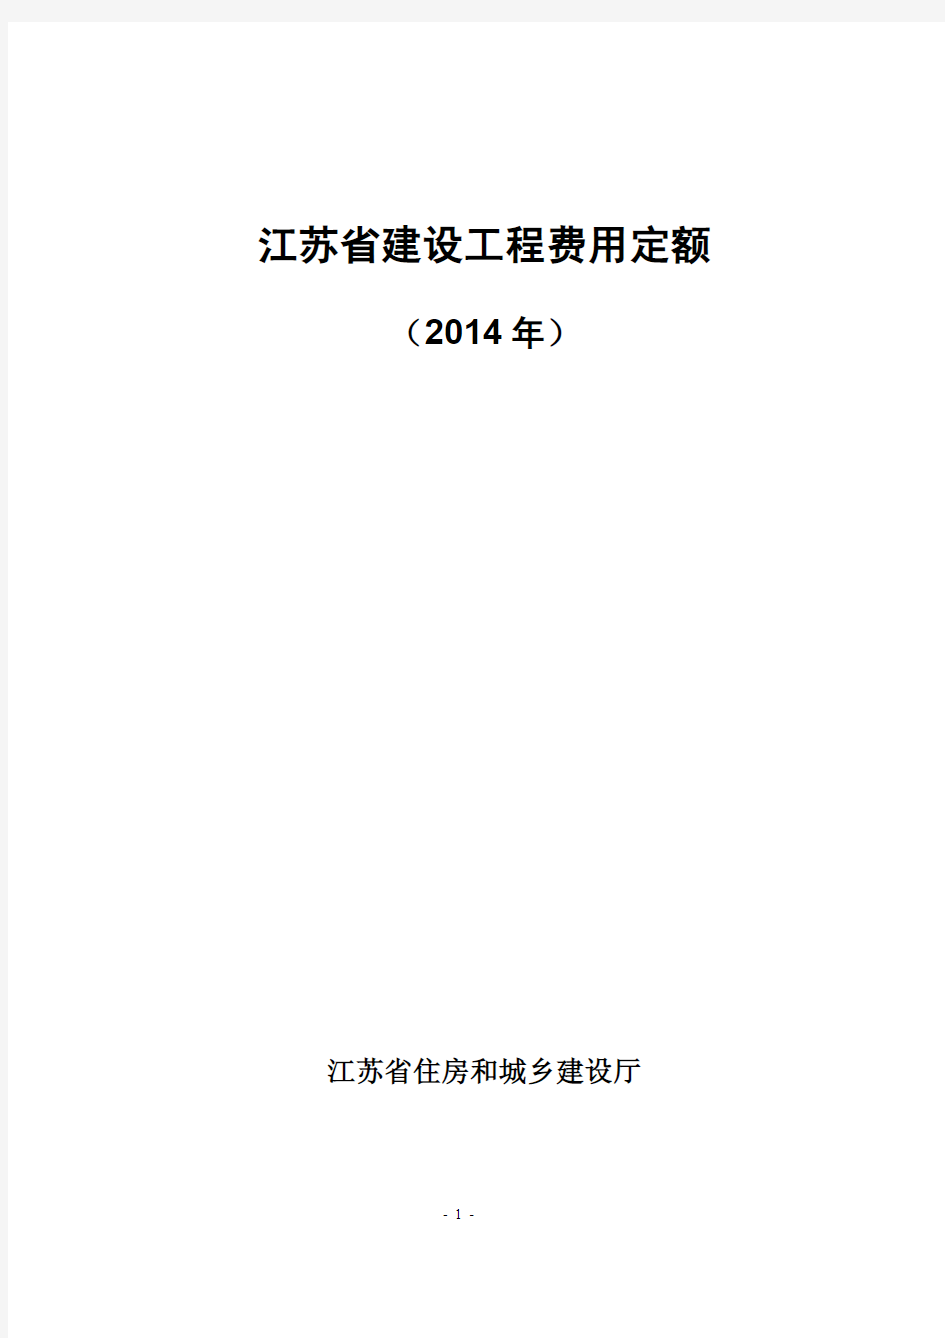 江苏省建设工程费用定额(2014年最新版)